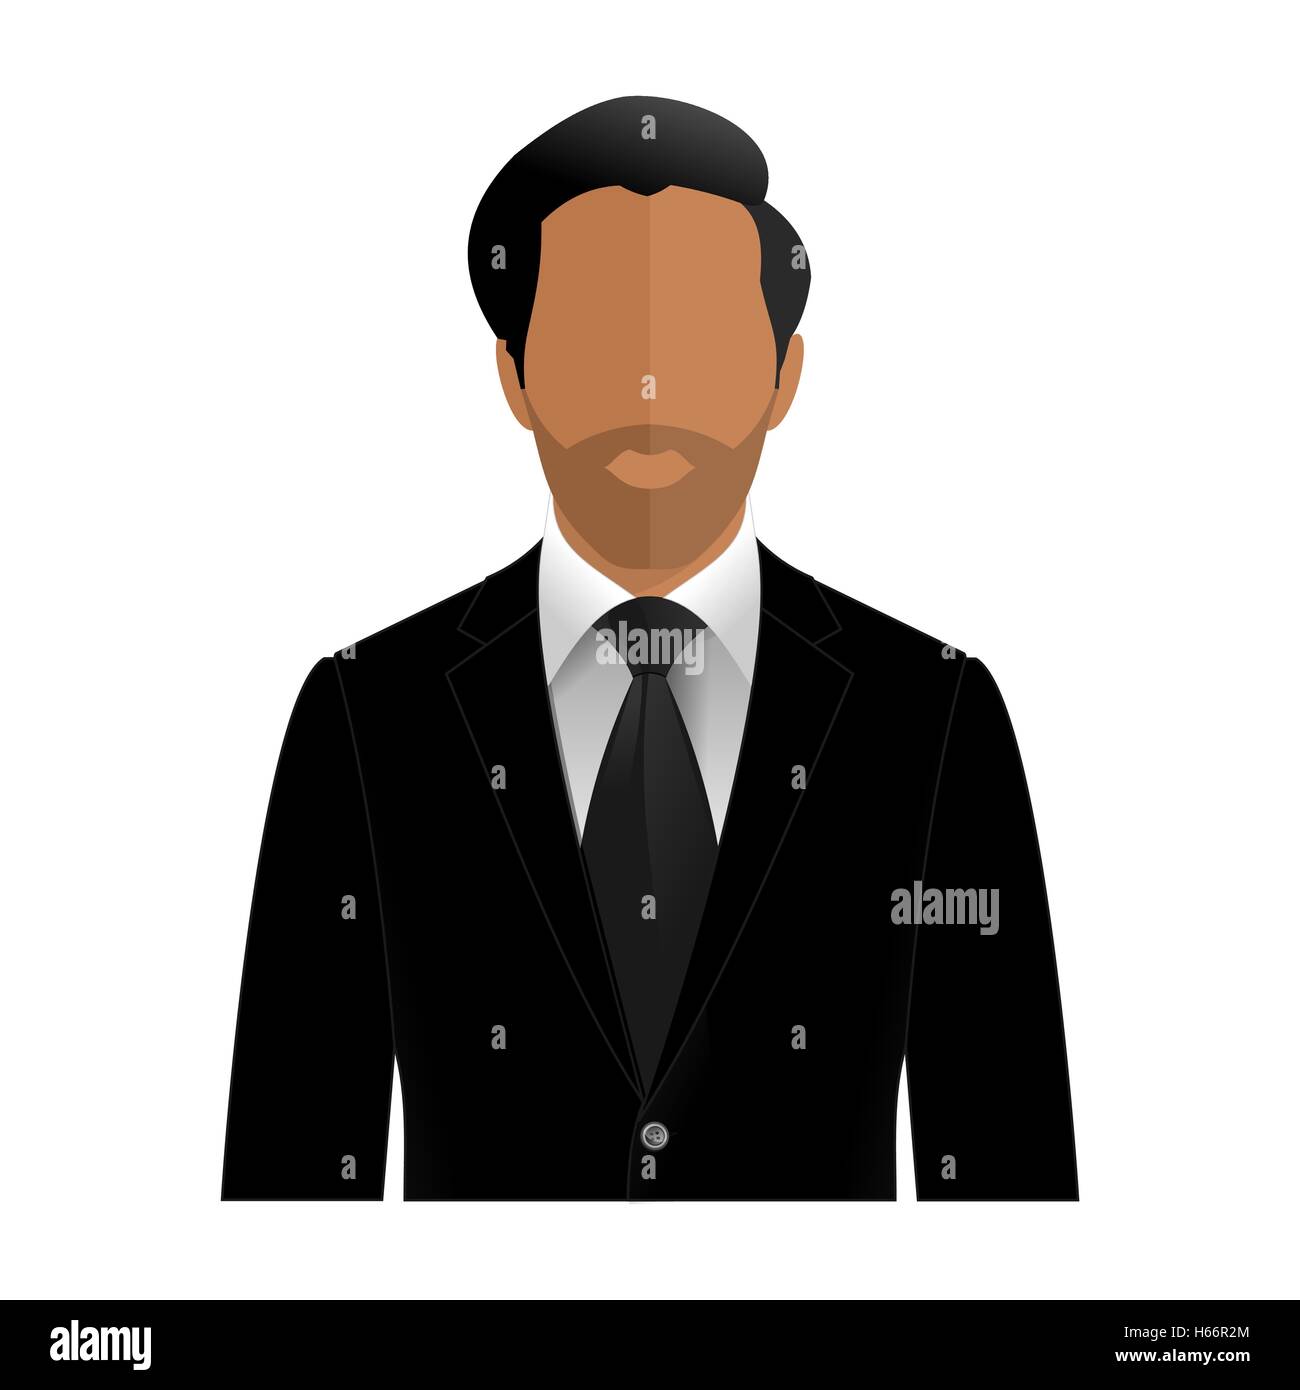 Vektor-Mann mit Bart in einem schwarzen Anzug mit kein Gesicht Stock Vektor